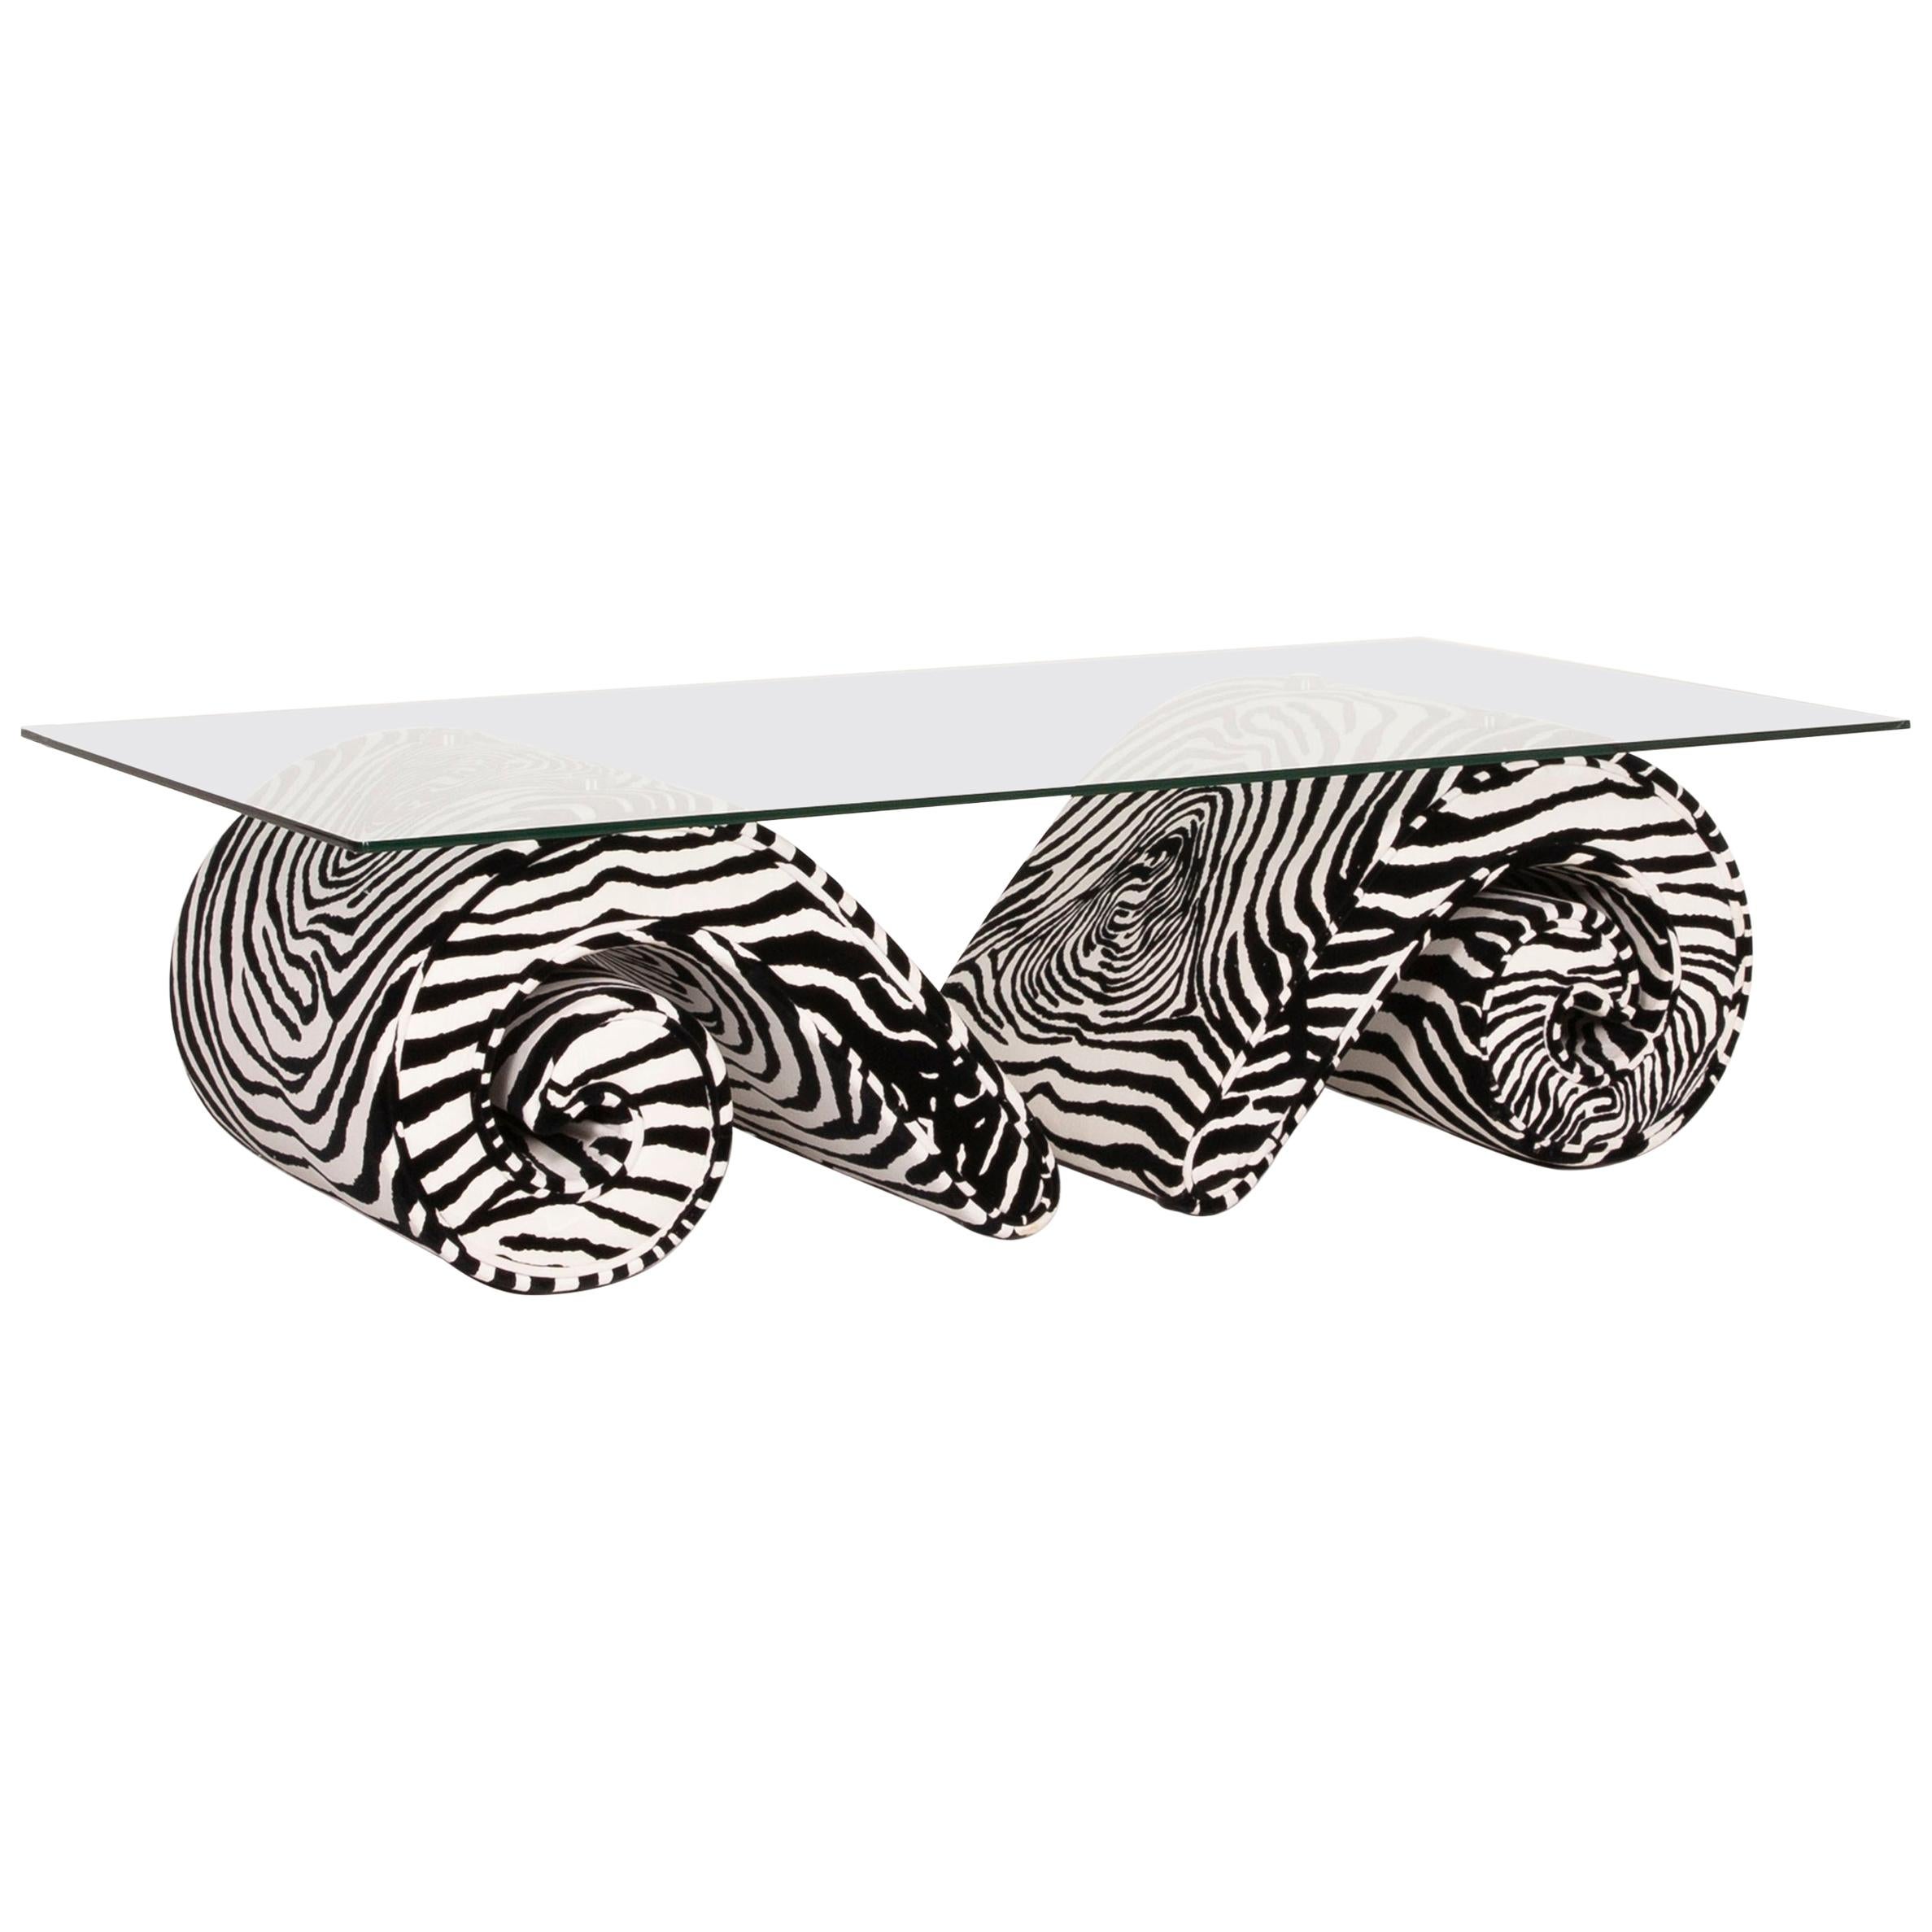 Bretz Glass Velvet Fabric Coffee Table Zebra Pattern Black White For Sale